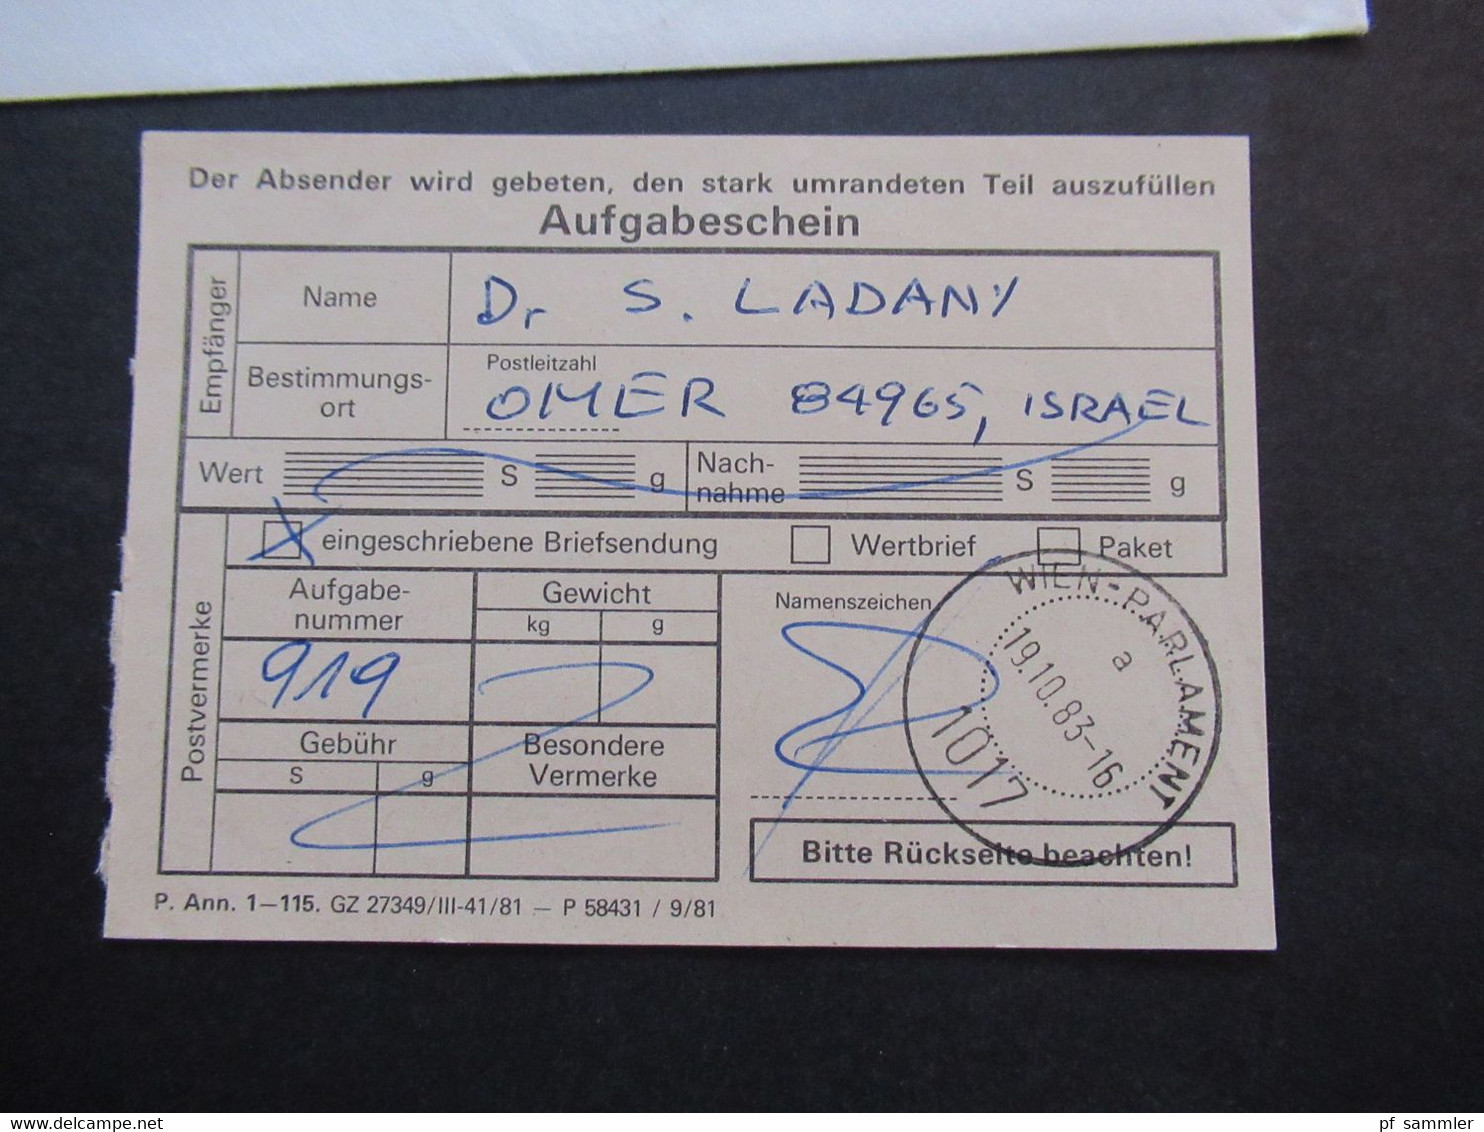 Österreich 1983 Einschreiben mit Aufgabeschein 1017 Wie Parlament Flugpost Air Mail nach Omer Israel mit 2 Ank. Stempel